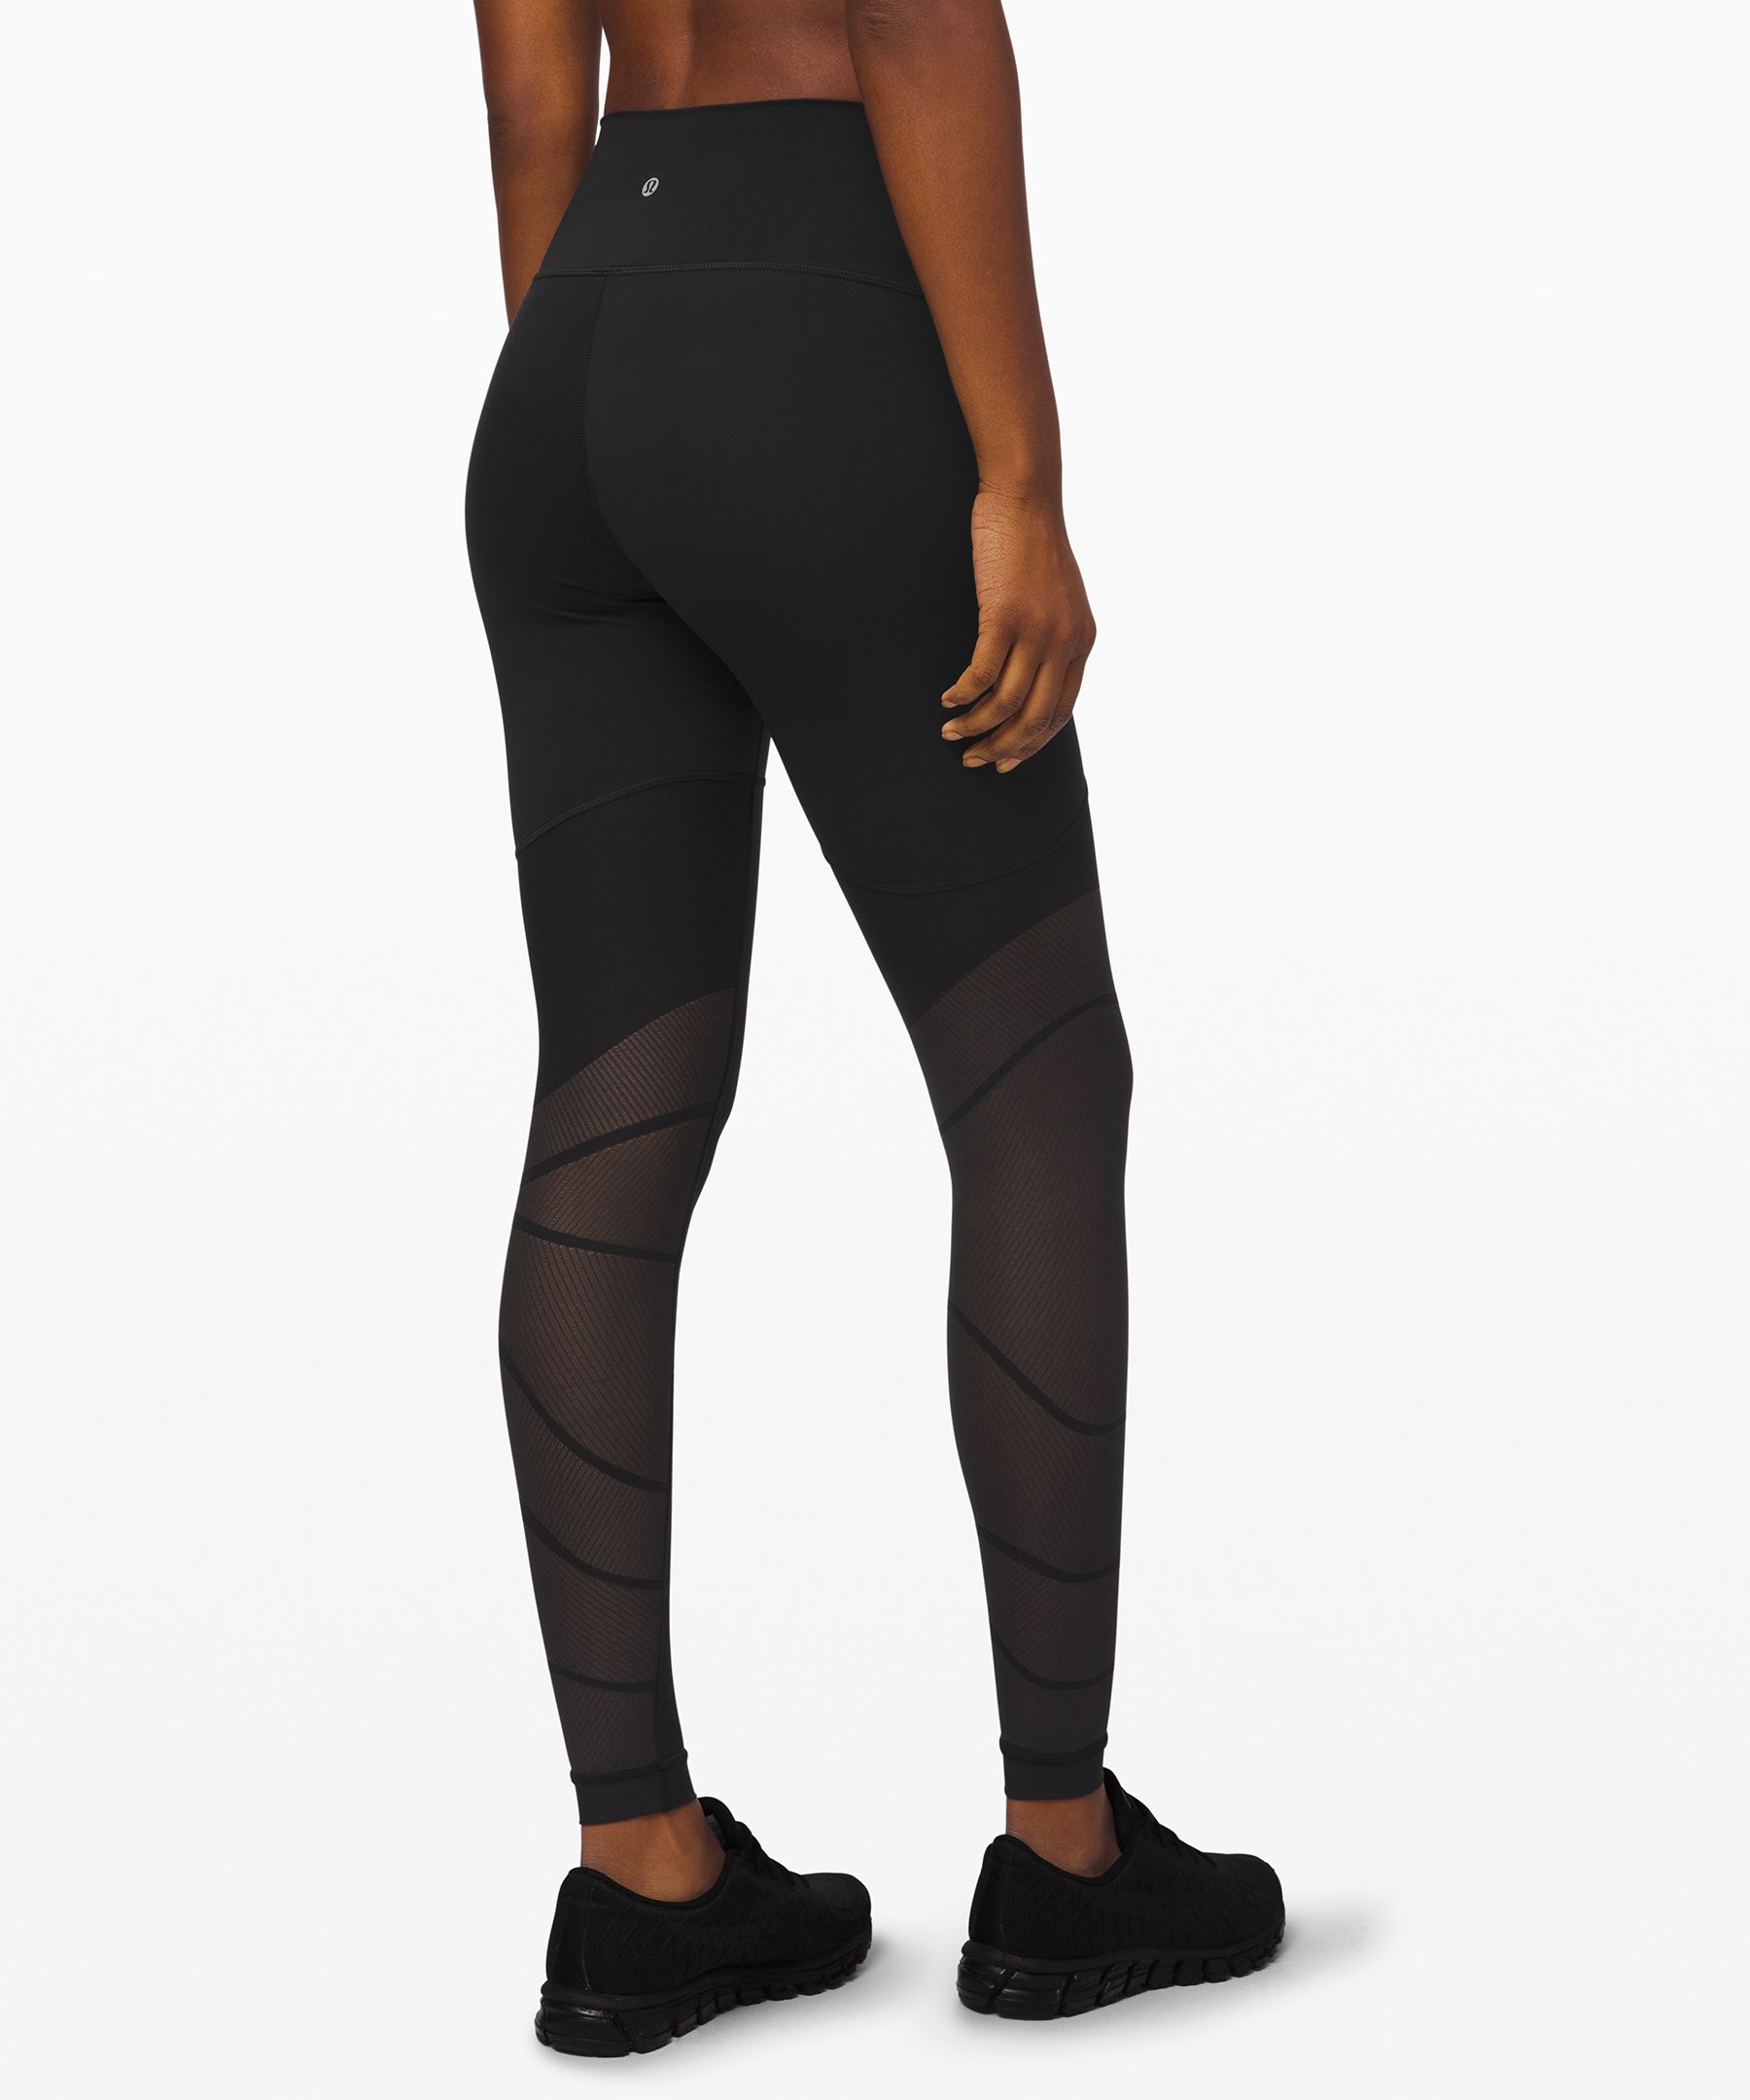 Lululemon Sheer Will High Rise Legging 28” Size 4 - $65 - From Jacqueline